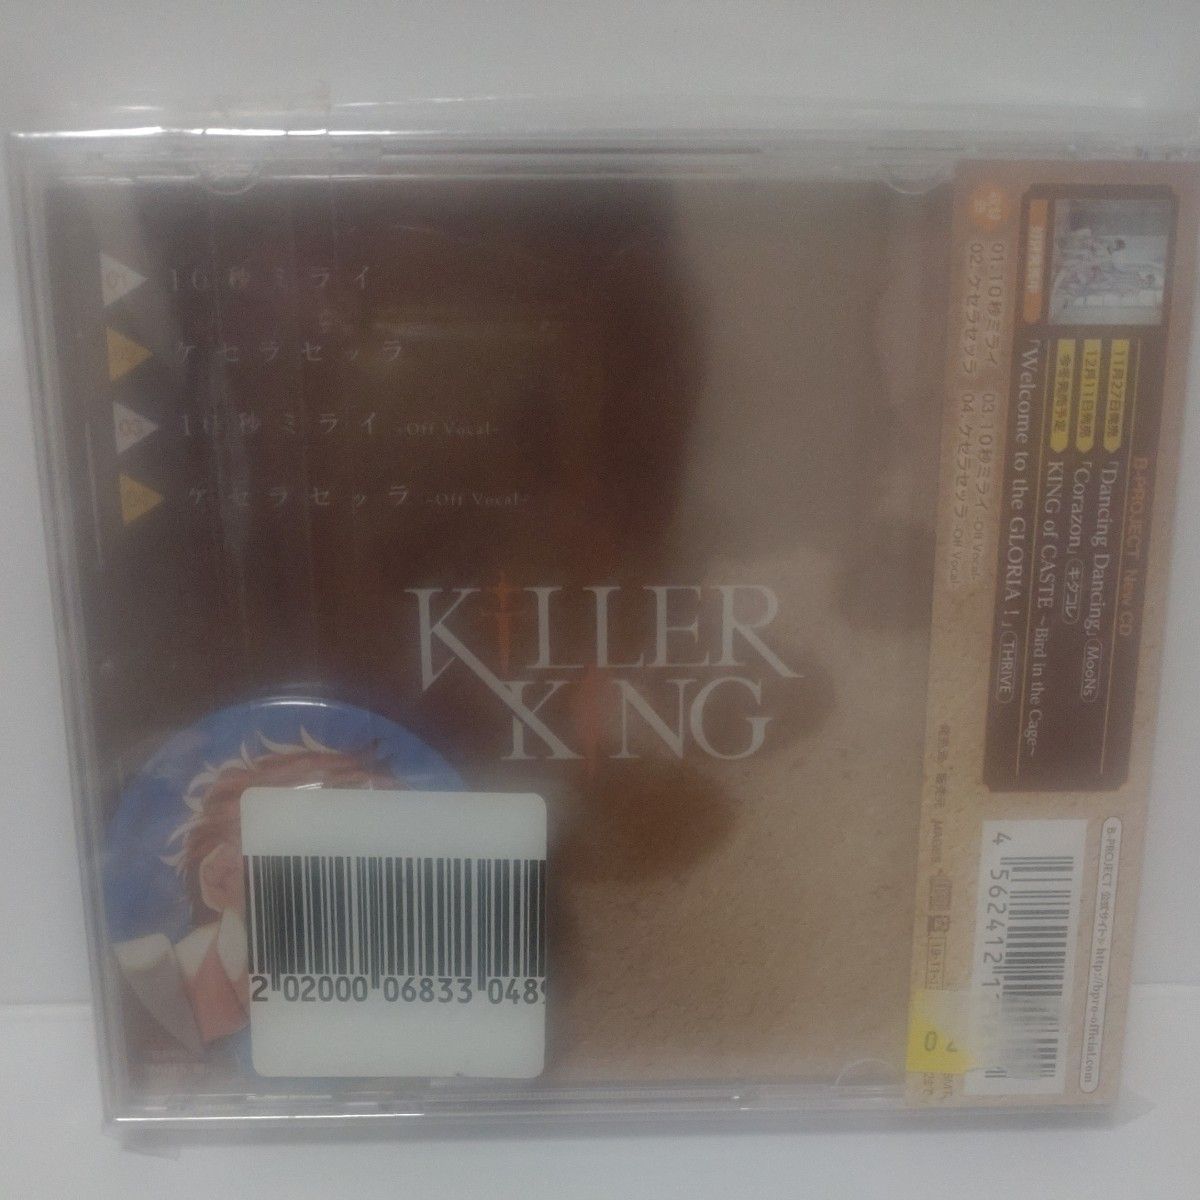 10秒ミライ (初回限定盤) CD KiLLER KiNG